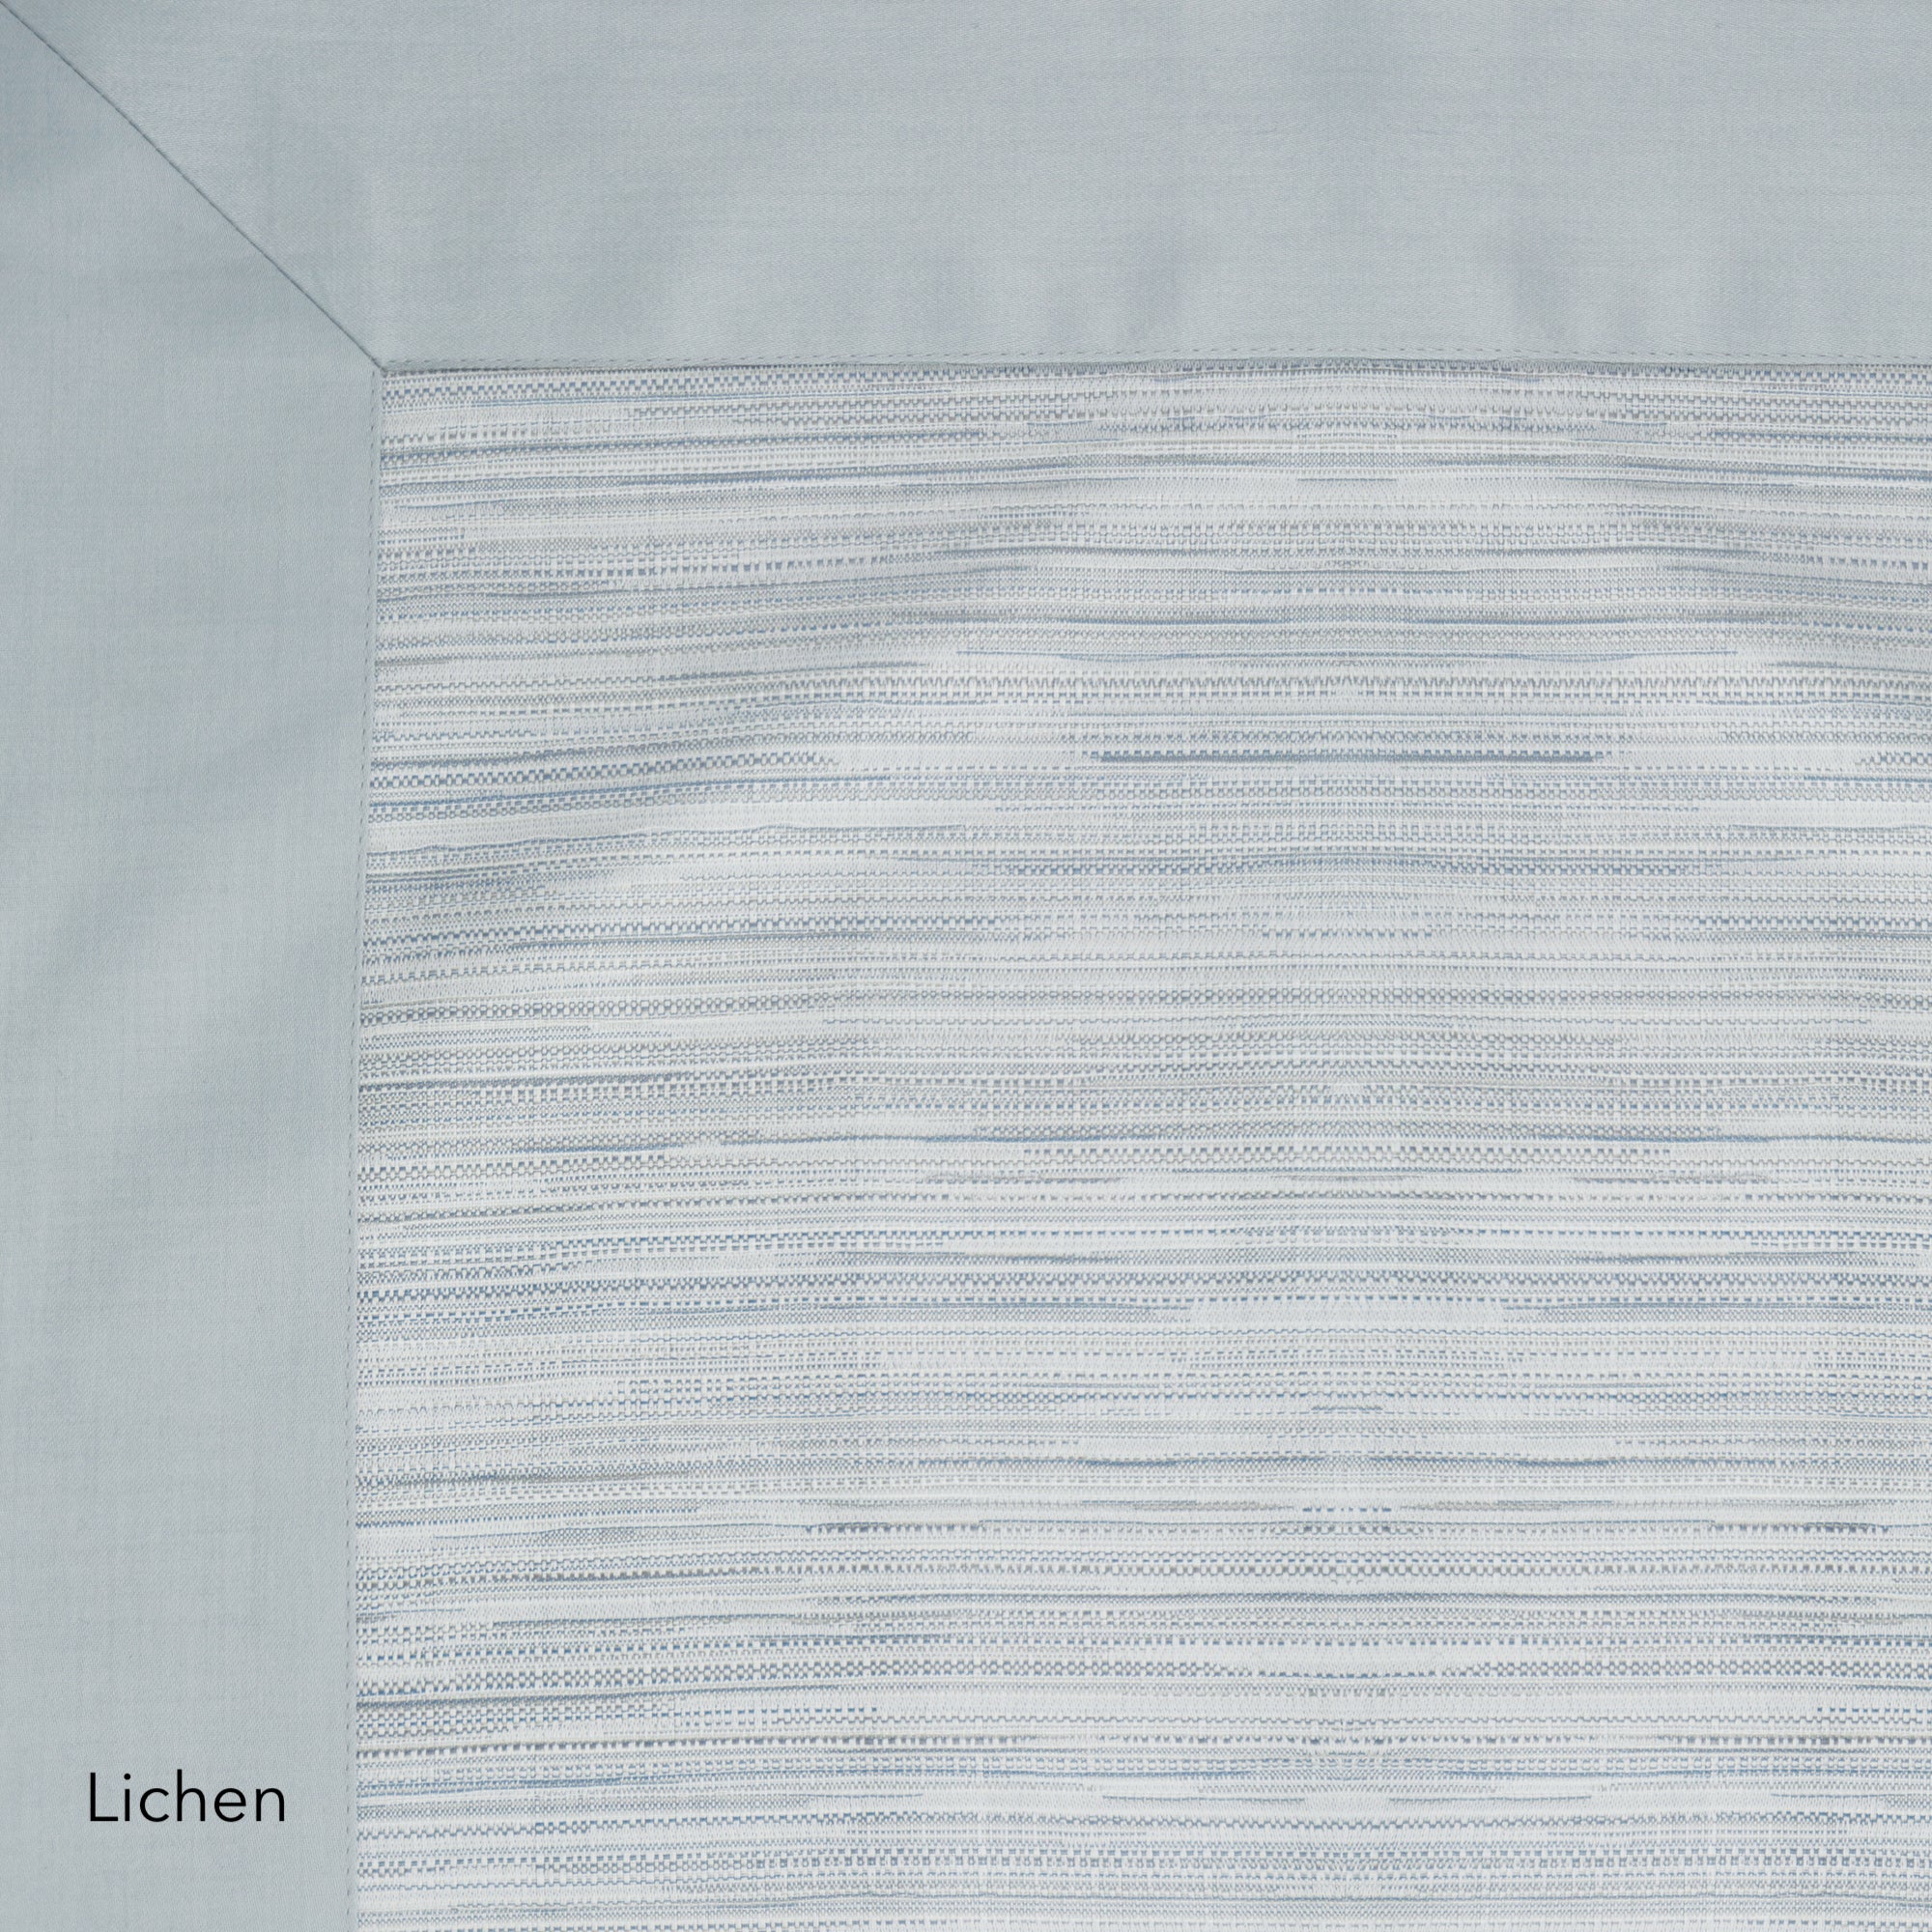 Vista Bed Linens